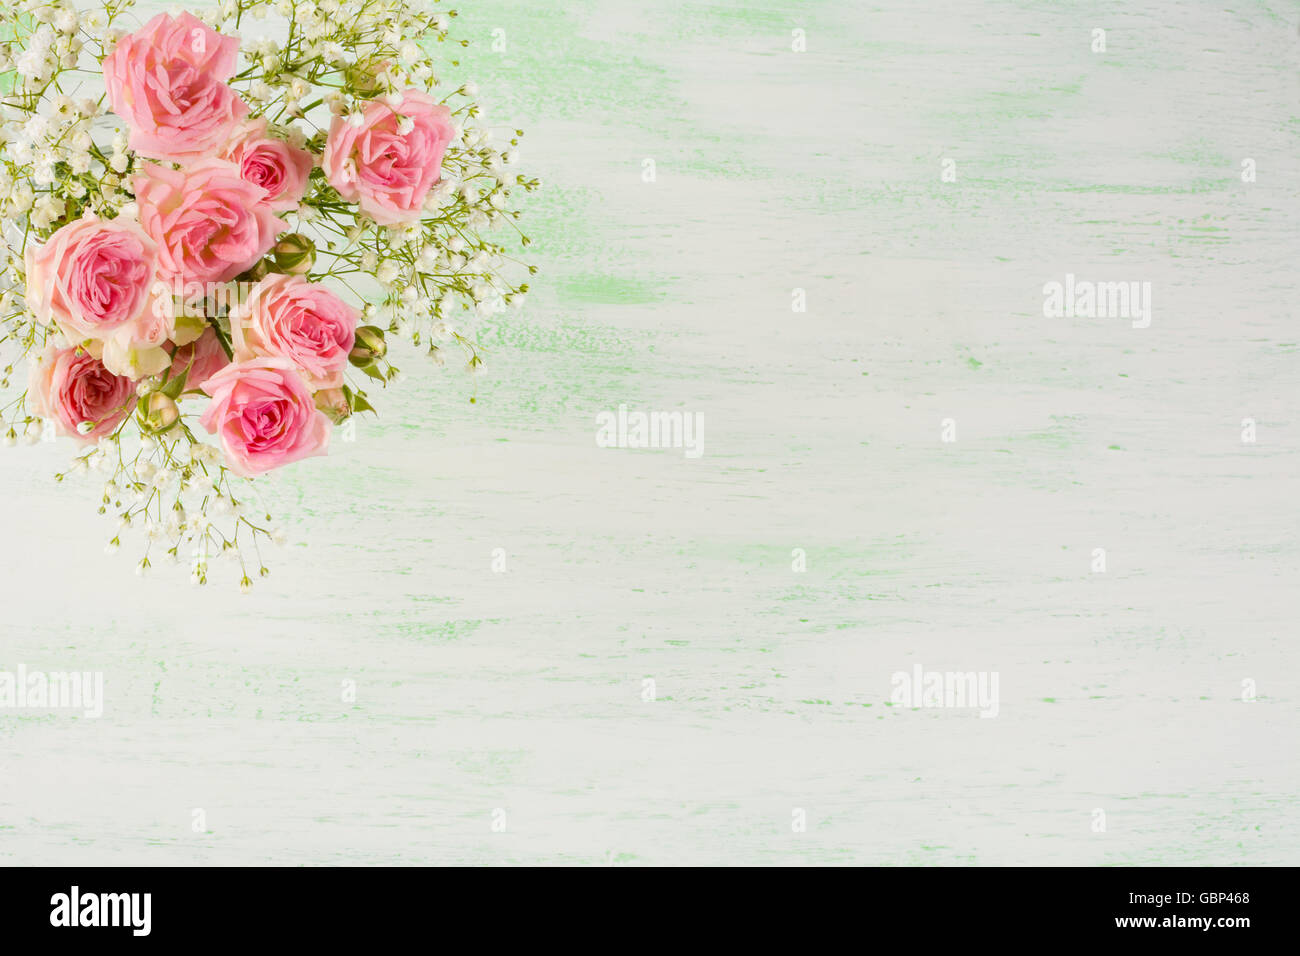 Rosa pálido rosas y flores blancas sobre fondo verde claro. Tarjeta de felicitación de flores con lugar para el texto. Foto de stock